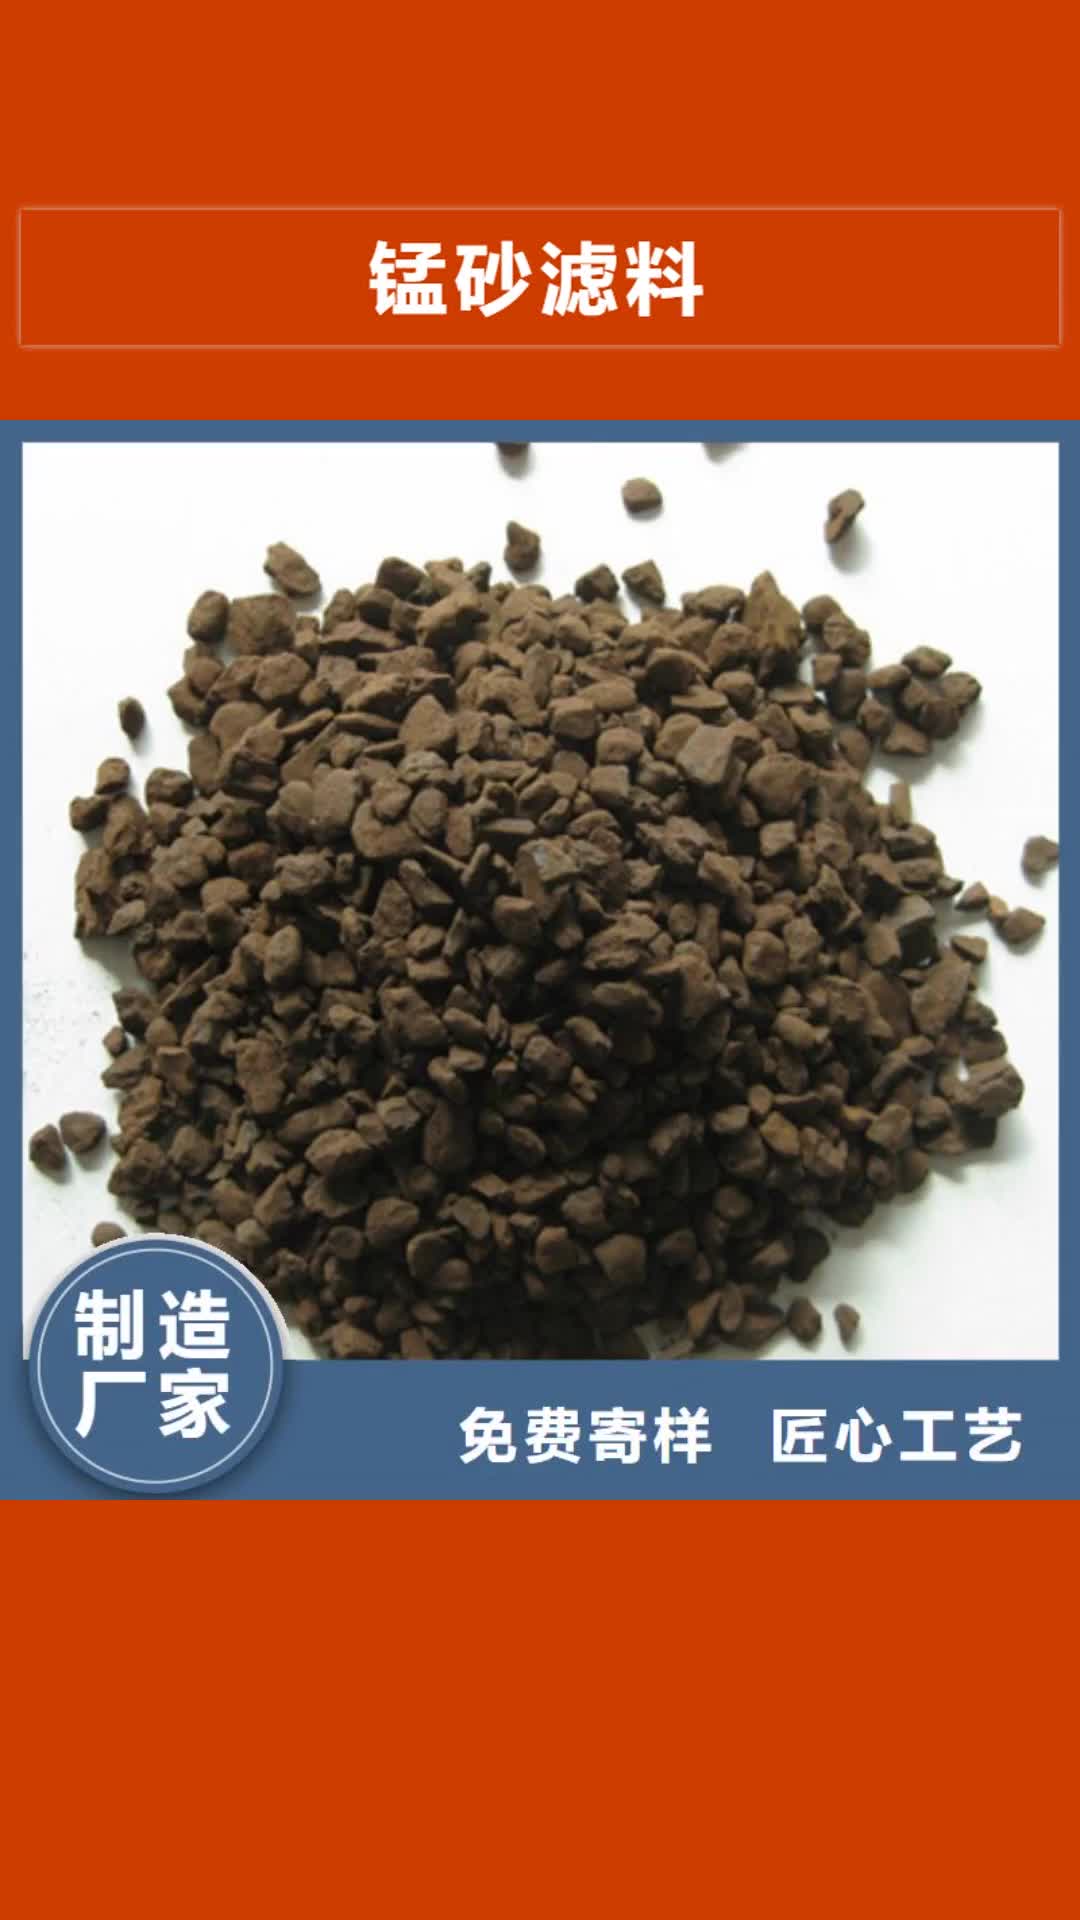 德宏 锰砂滤料【沸石】质量安全可靠